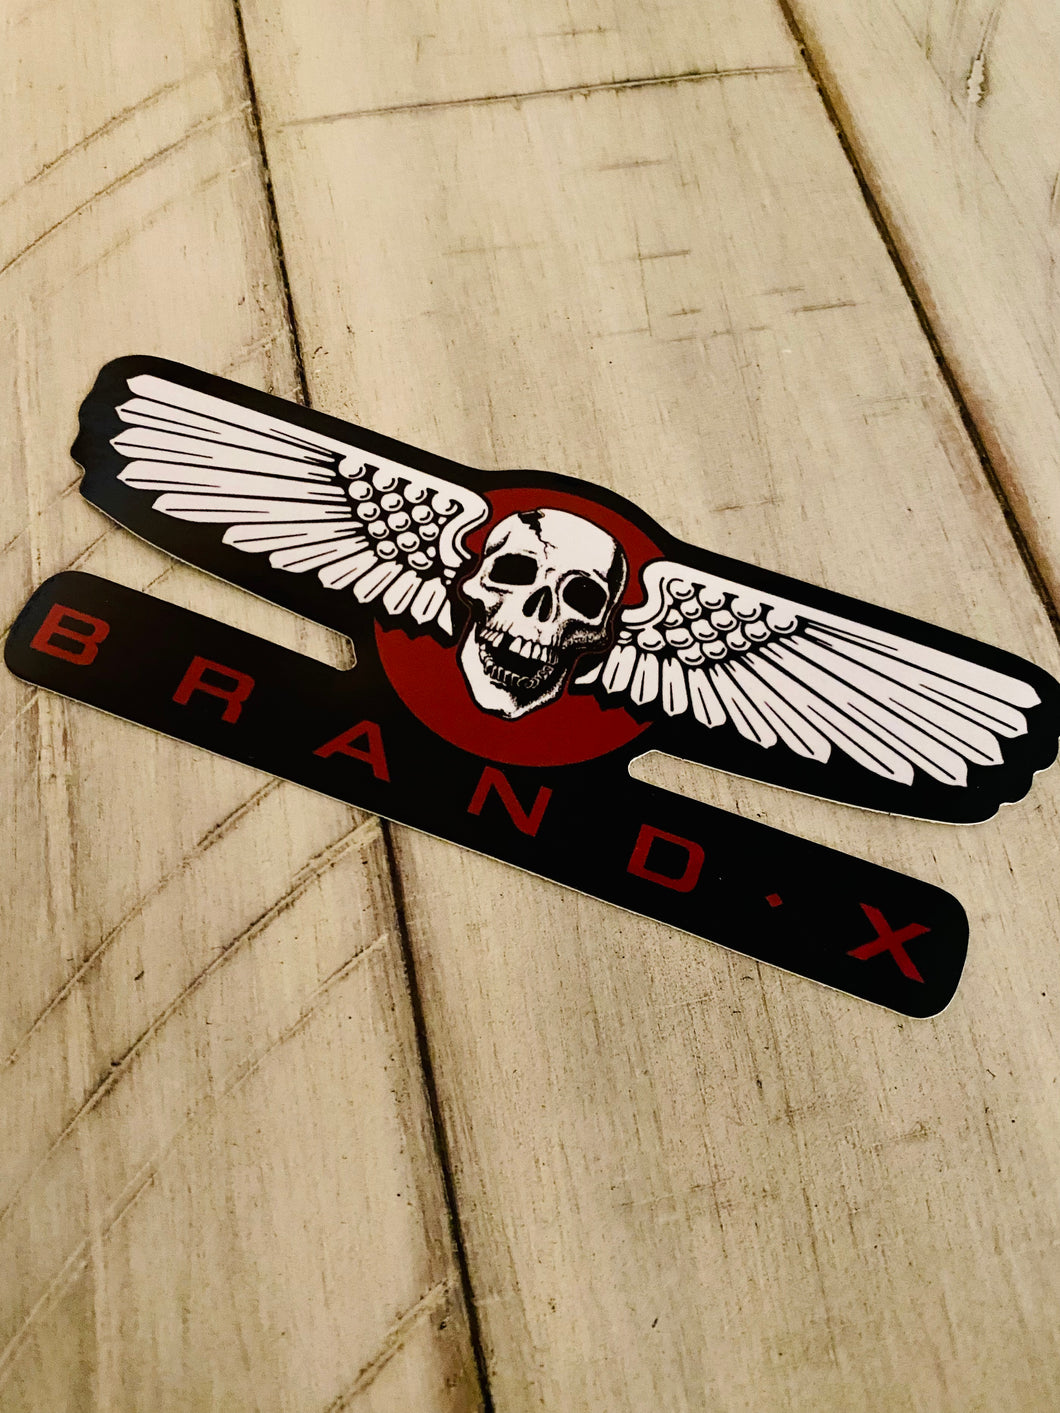 Brand-X Wings Sticker 6”